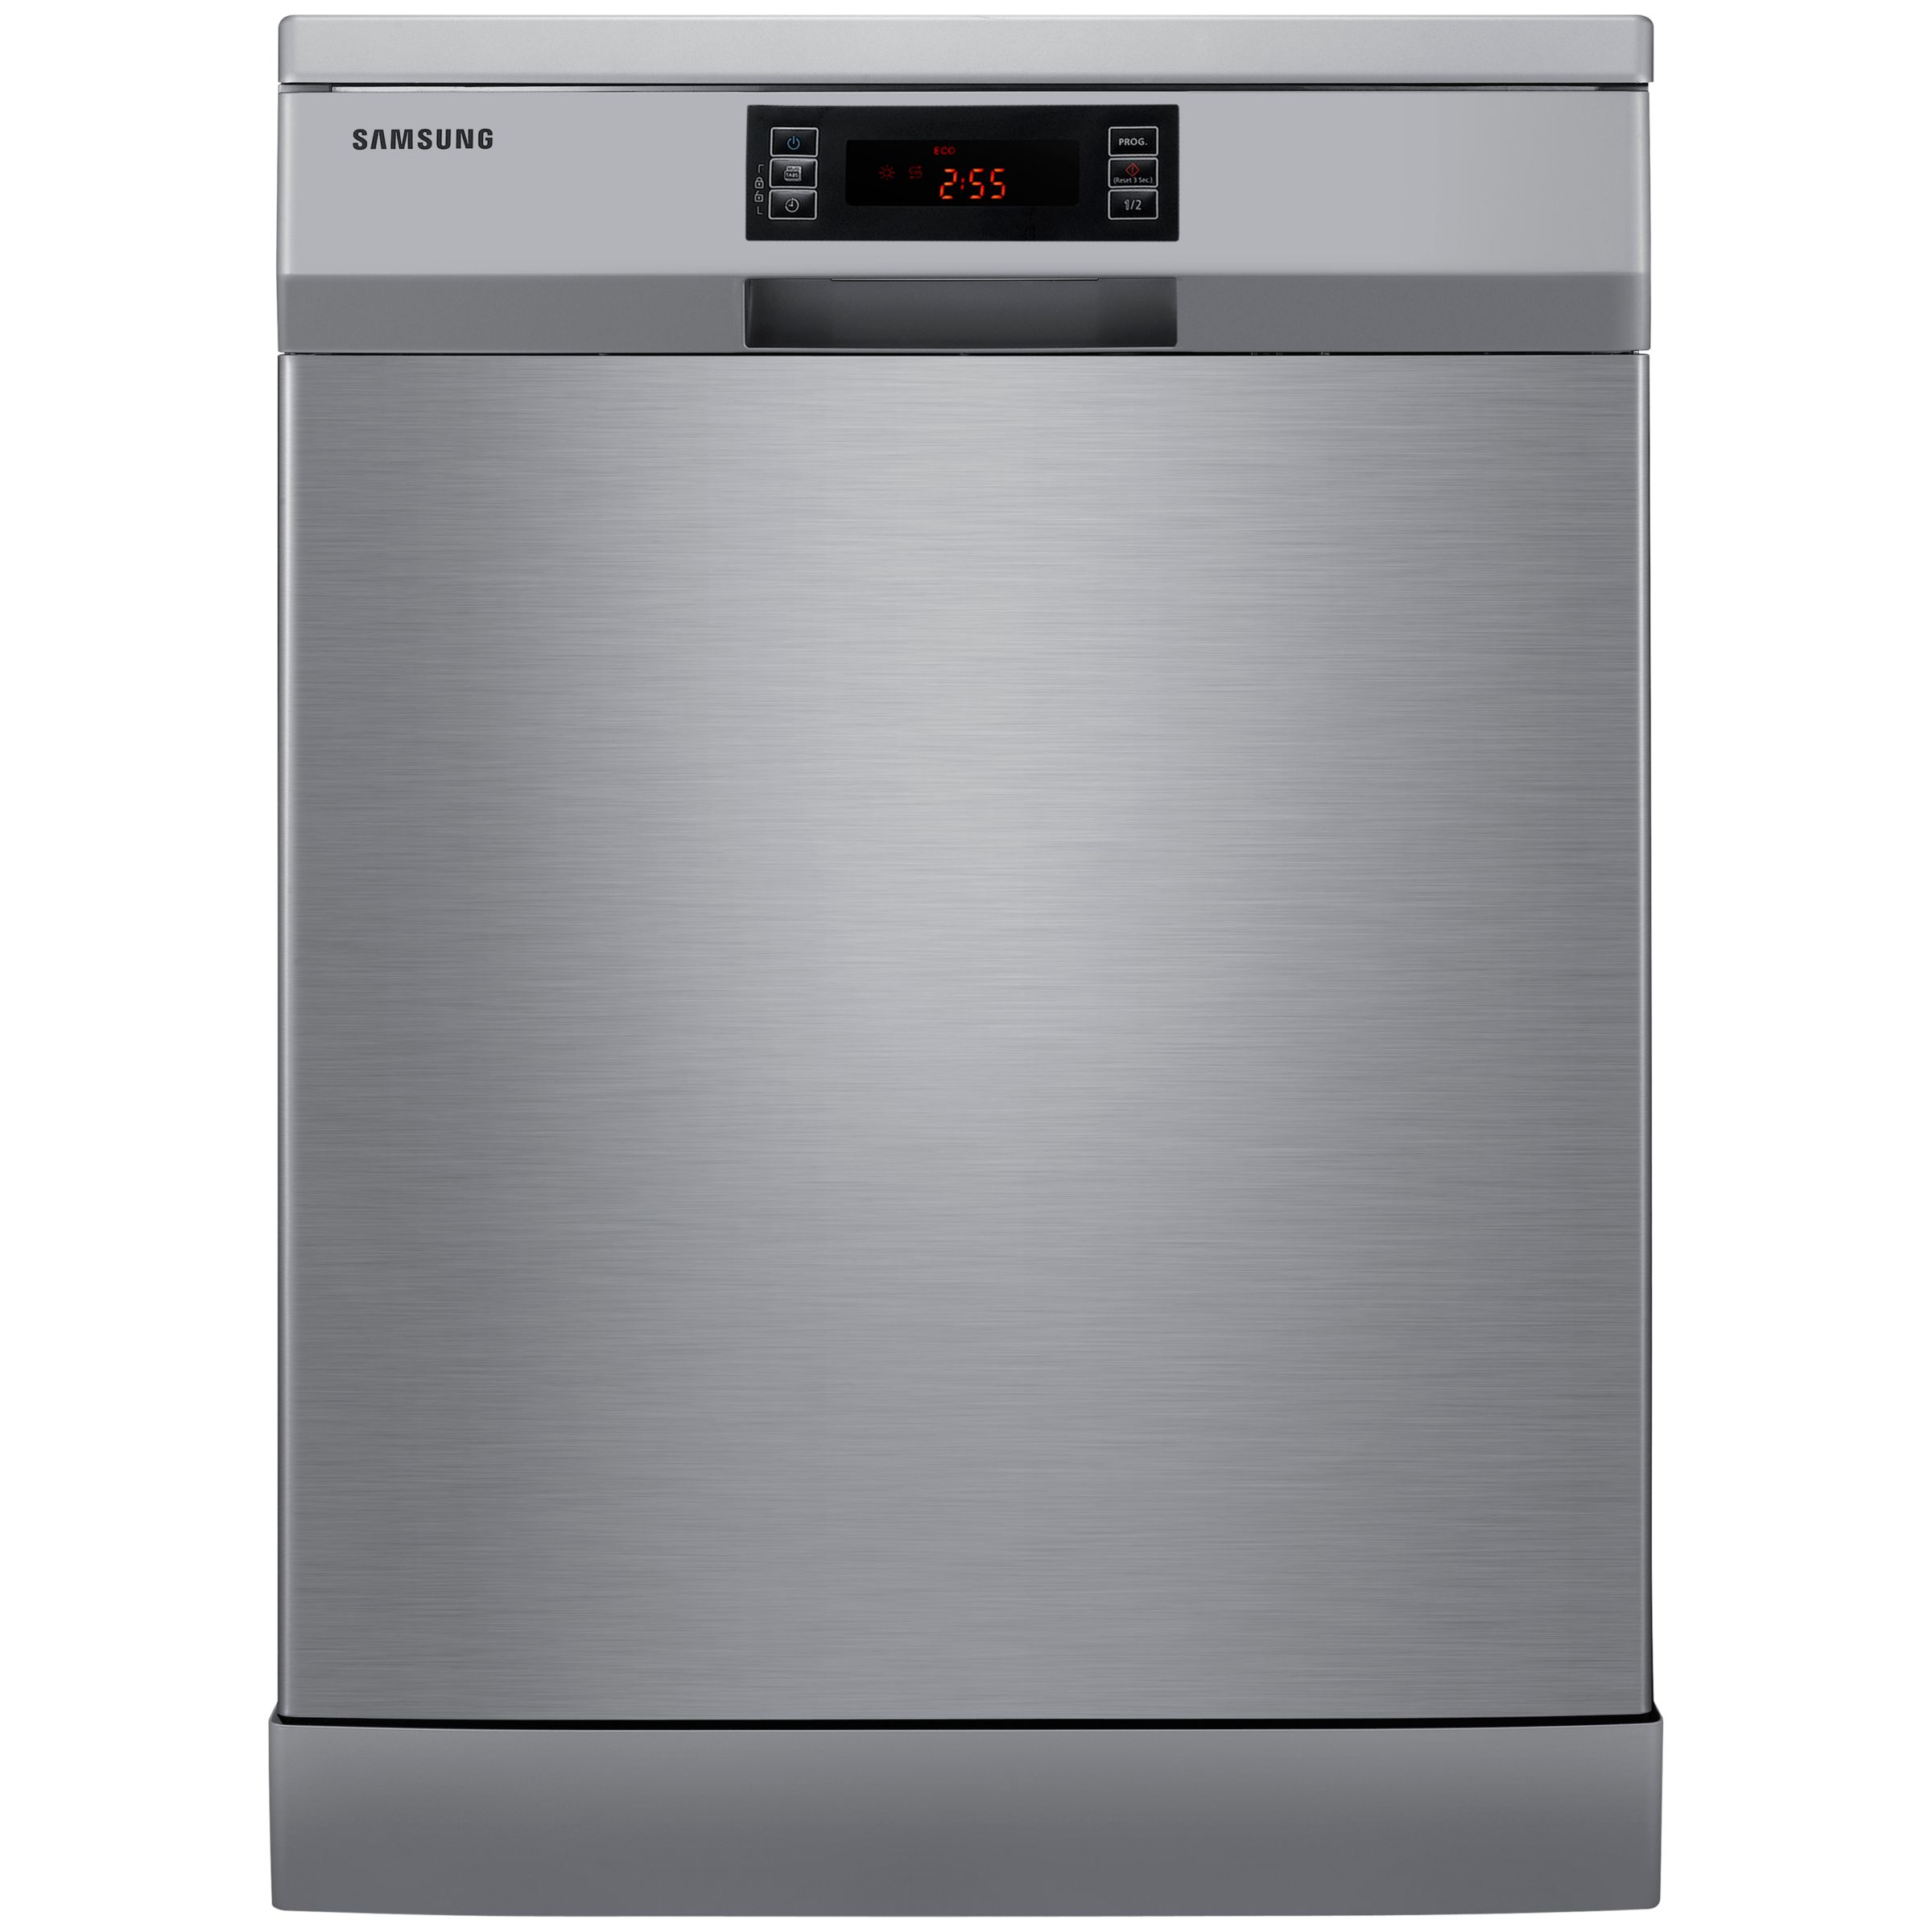 Samsung DW-FN320T Dishwasher, Silver